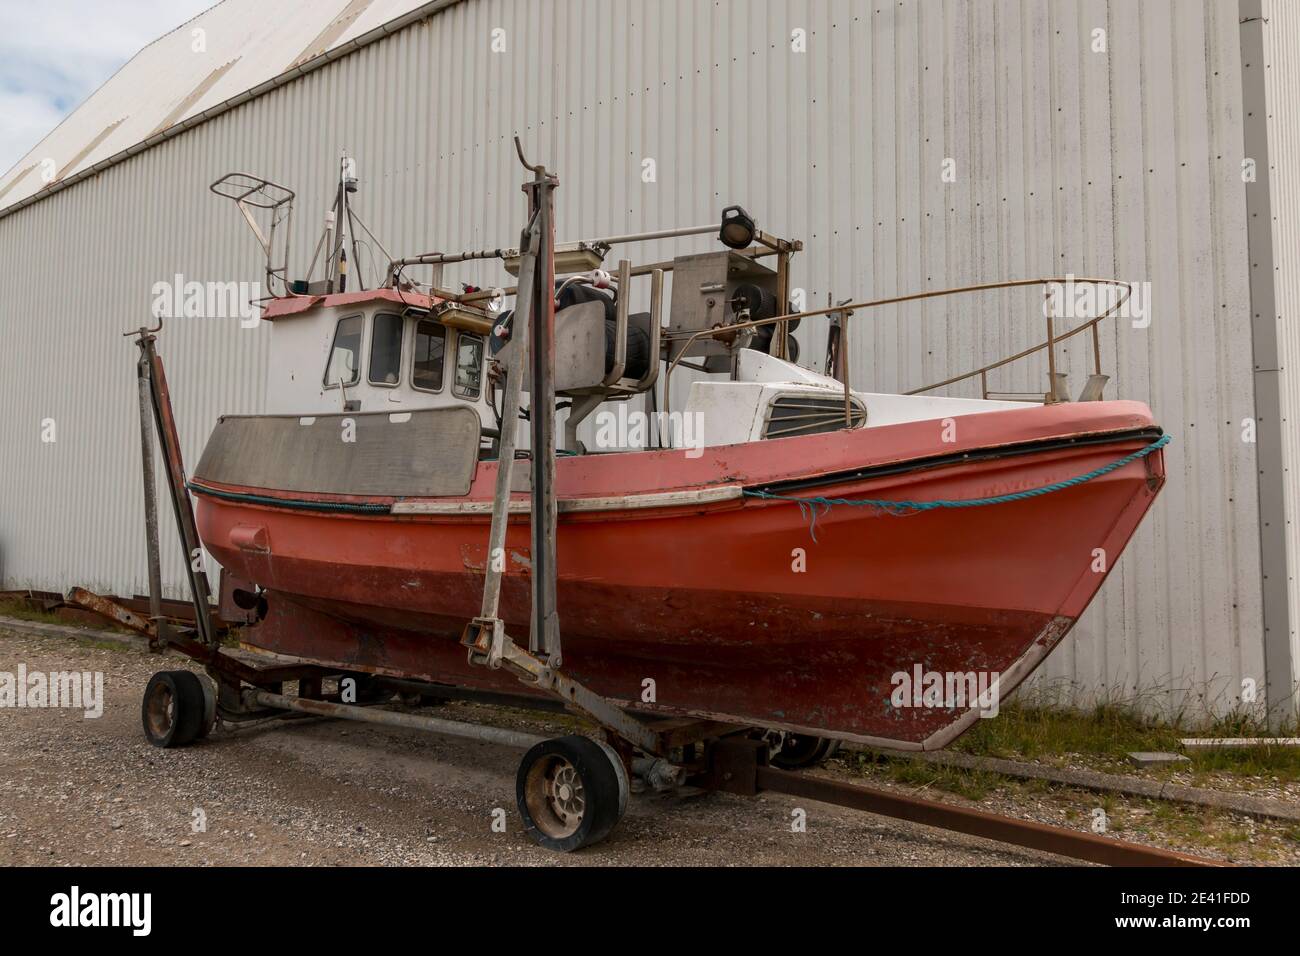 Bonnerup, Dinamarca - 15 juli 2020: Cortadores de pesca rojos se encuentran en el muelle y están siendo reparados, Foto de stock